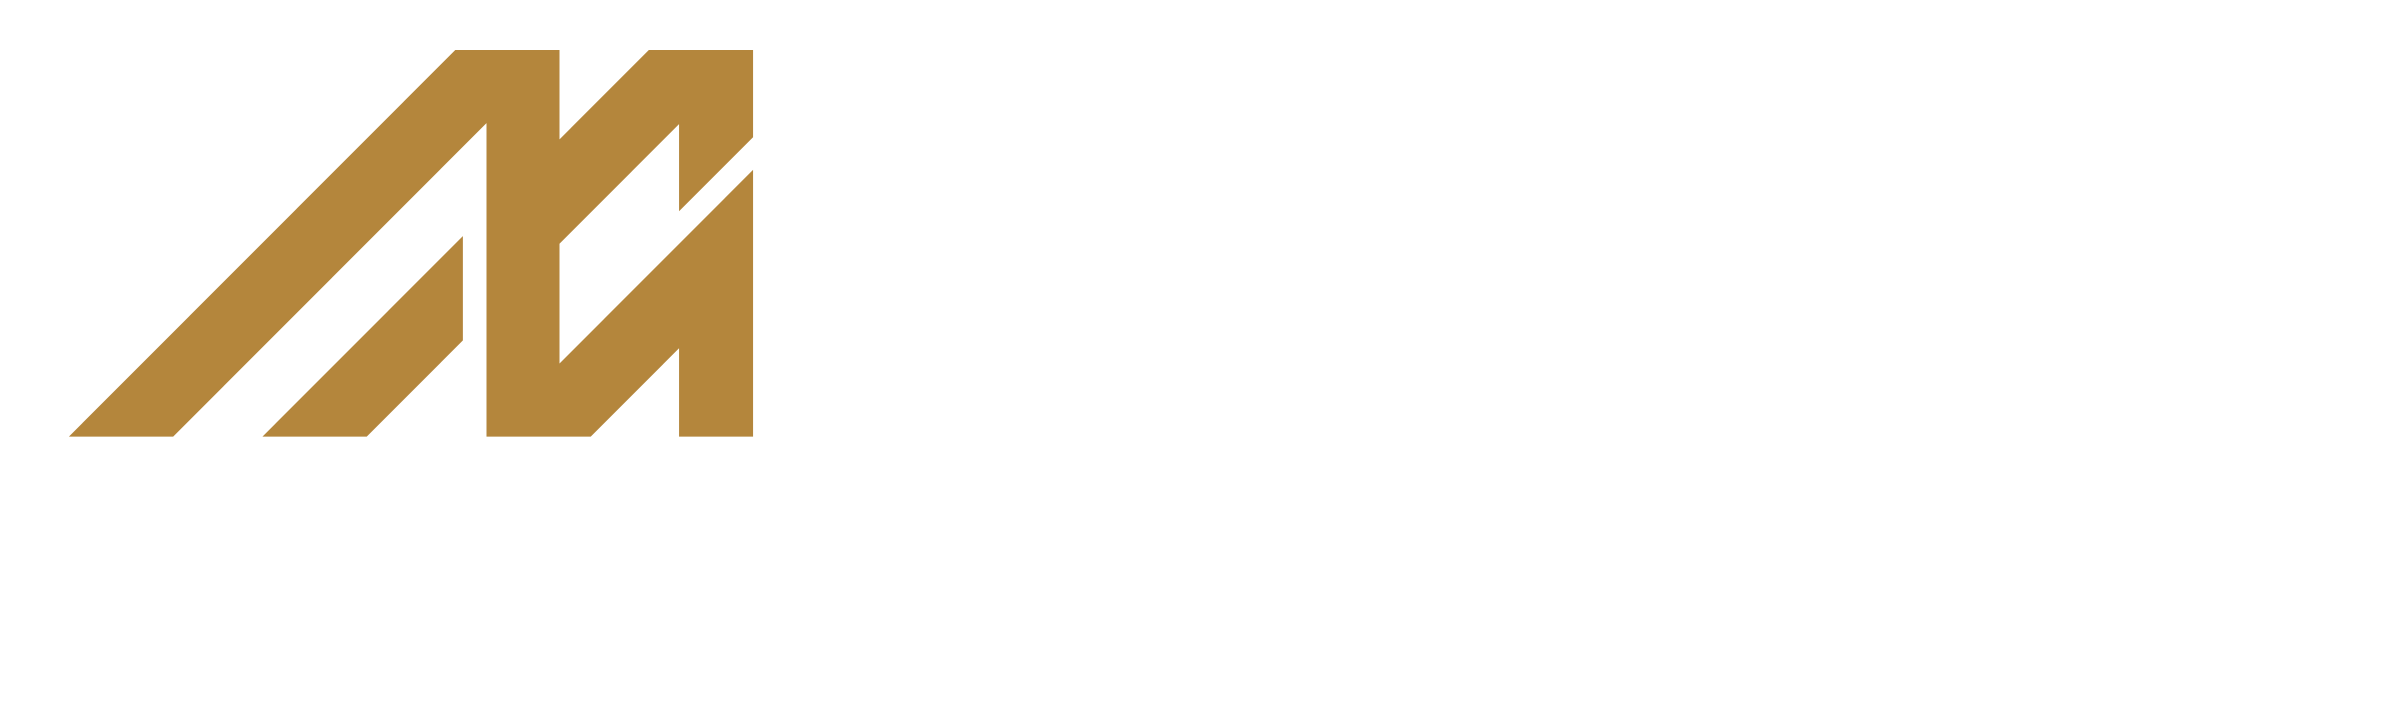 MM-Series - Audeze LLC